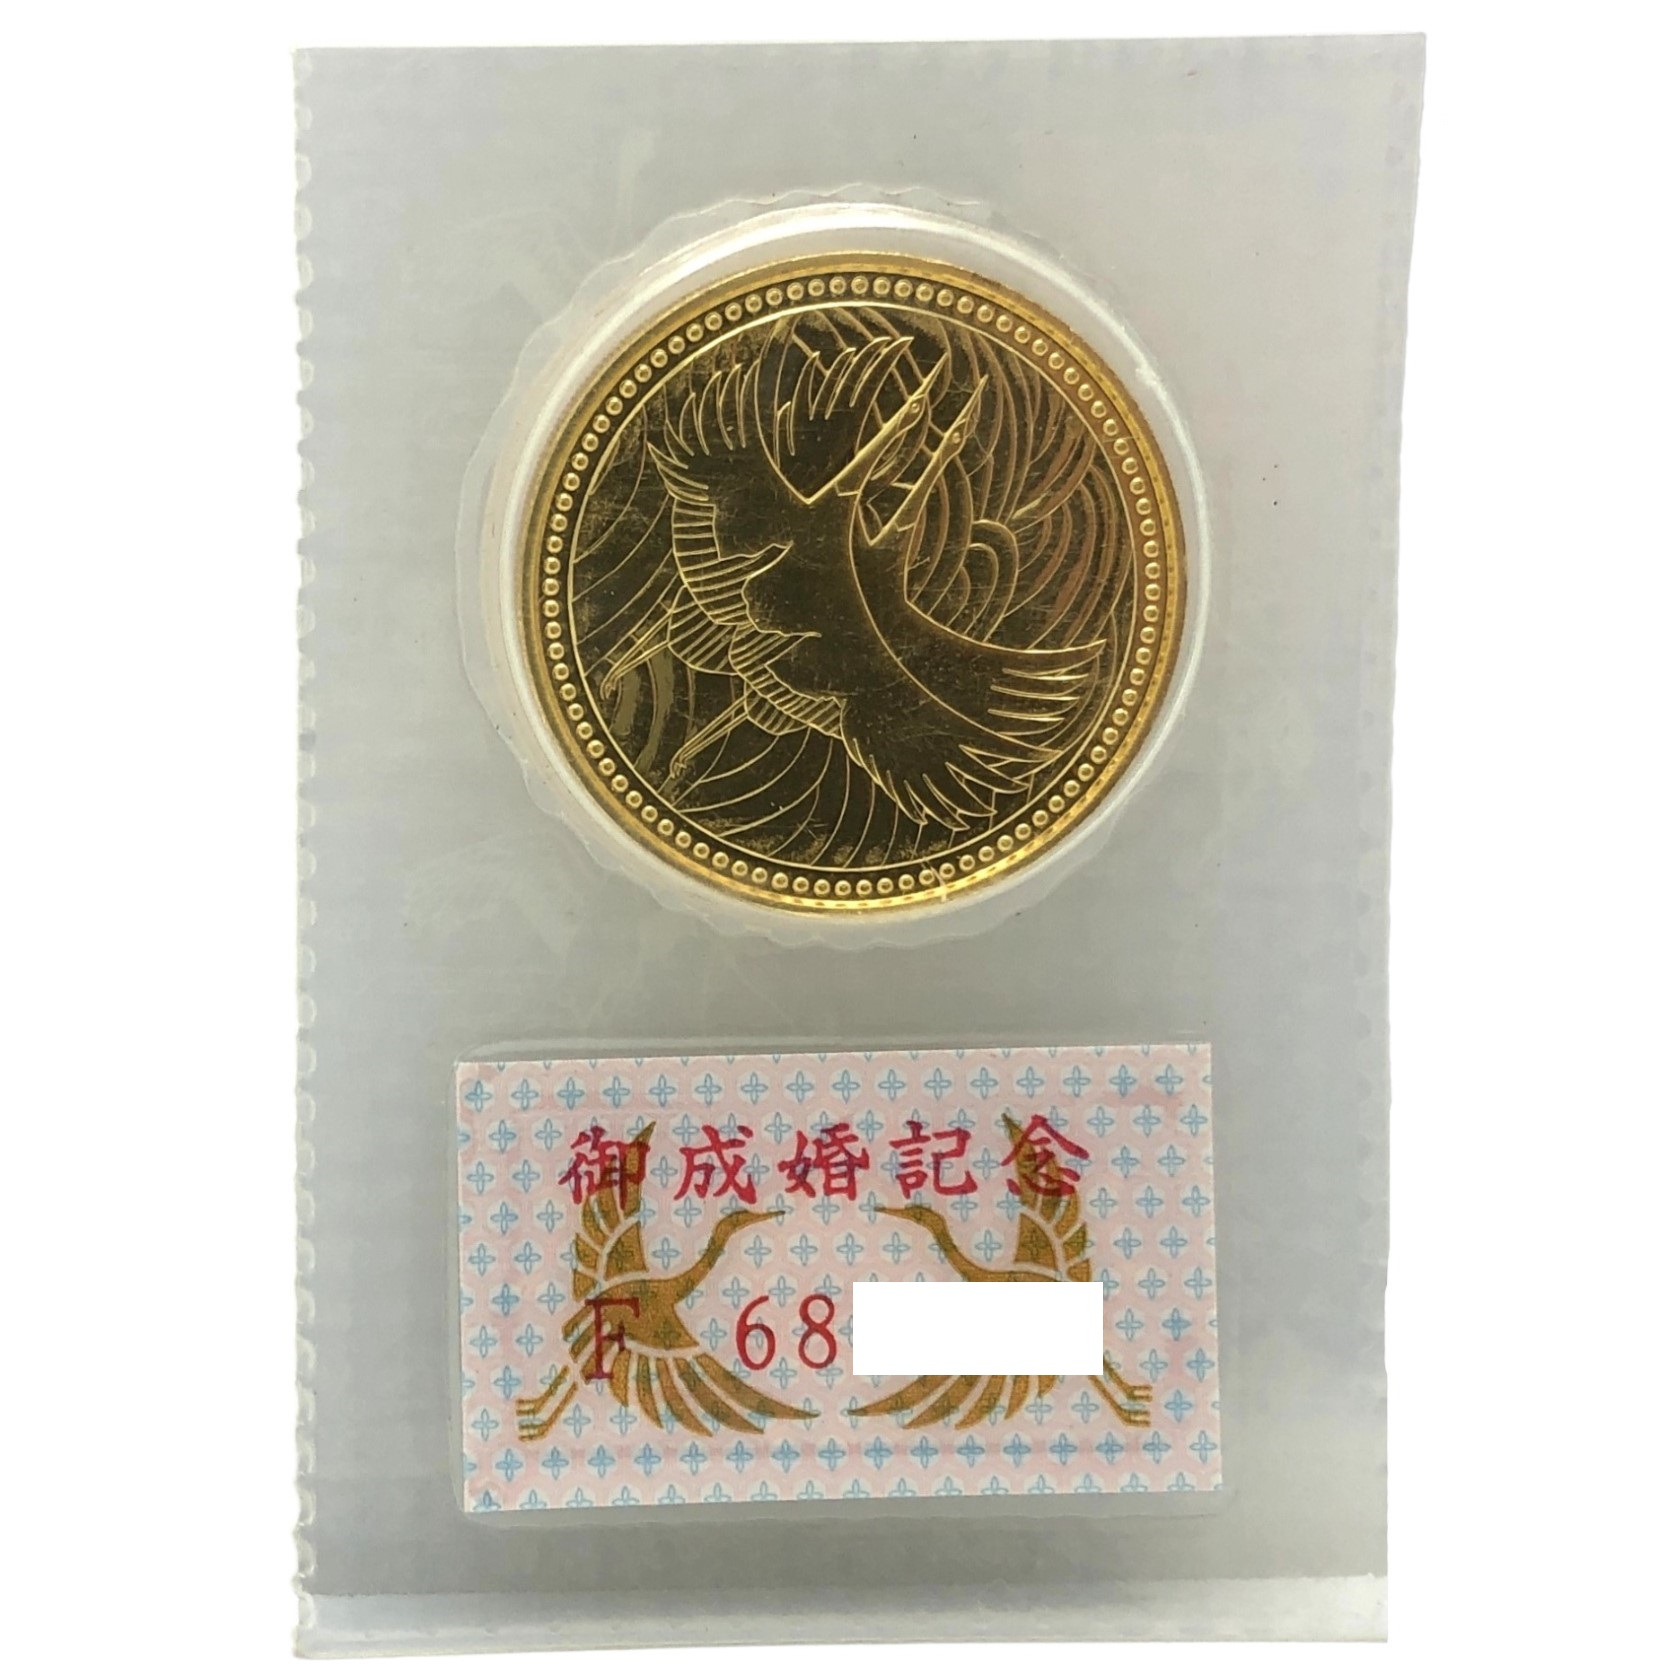 皇太子殿下御成婚記念5万円硬貨 - コレクション